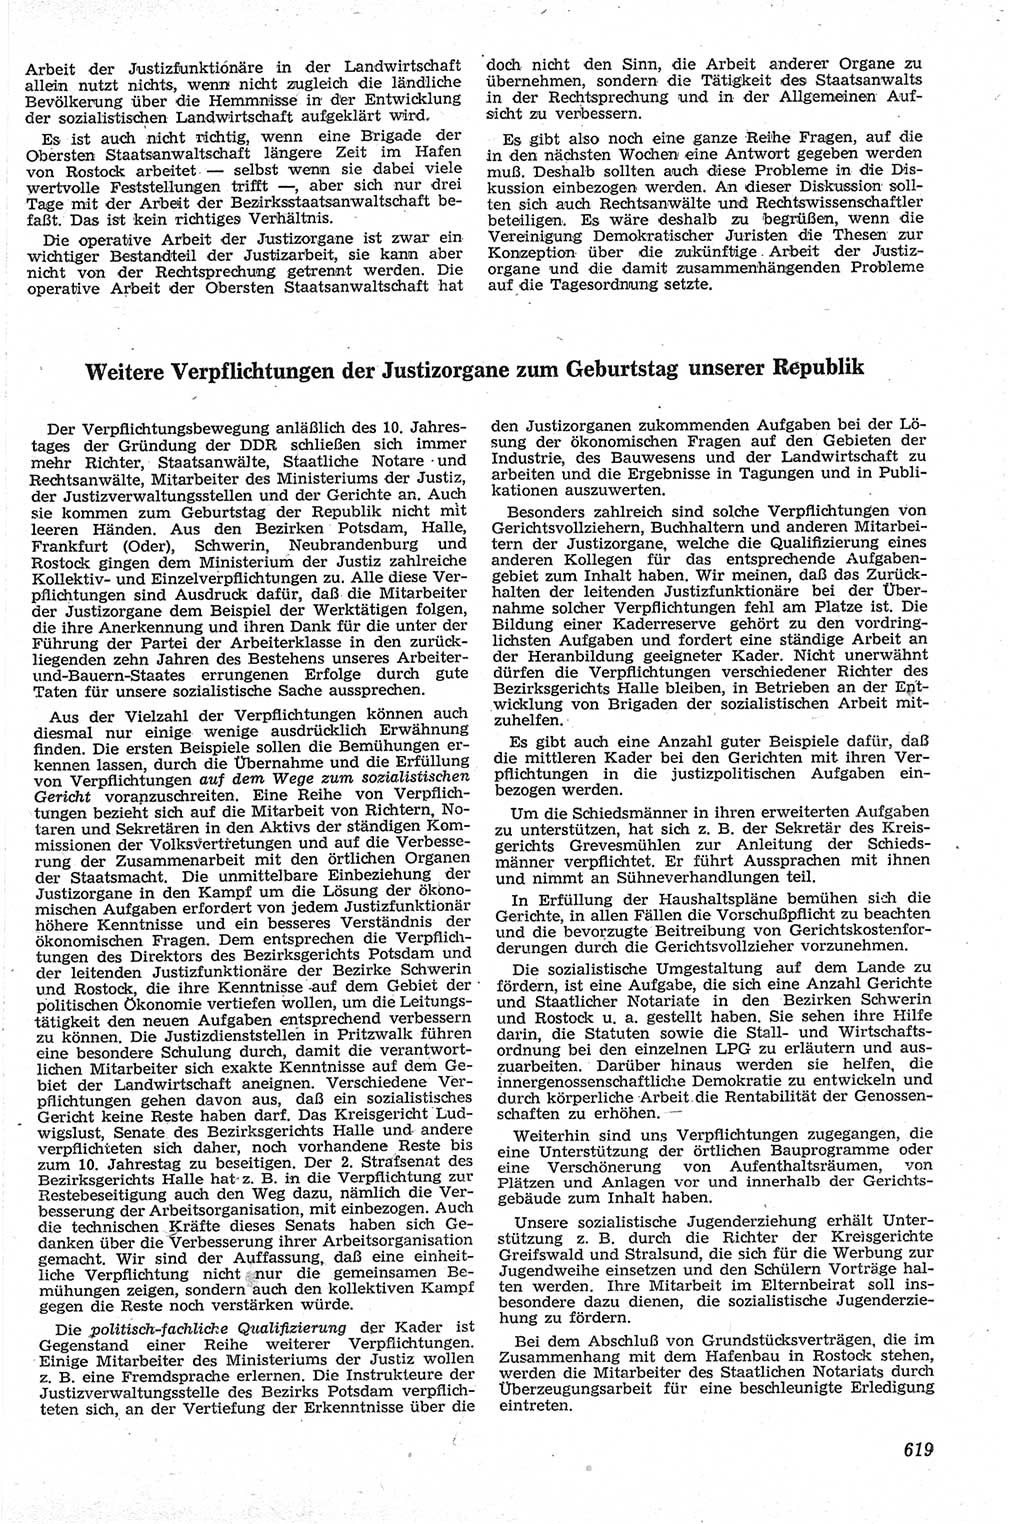 Neue Justiz (NJ), Zeitschrift für Recht und Rechtswissenschaft [Deutsche Demokratische Republik (DDR)], 13. Jahrgang 1959, Seite 619 (NJ DDR 1959, S. 619)